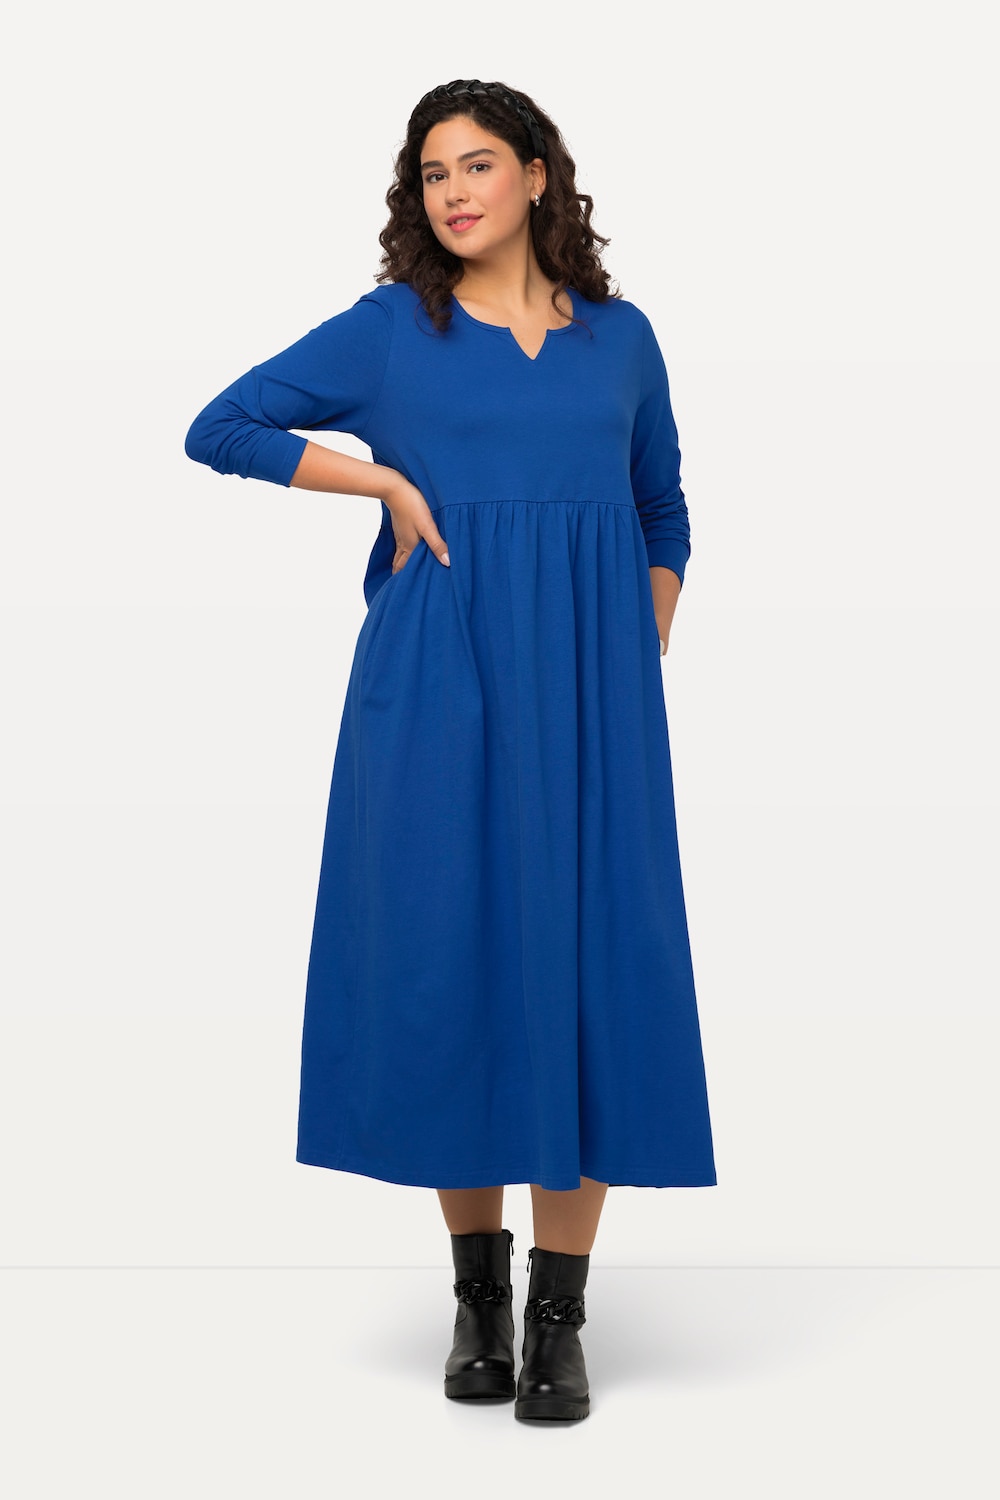 Große Größen Kleid, Damen, blau, Größe: 58/60, Baumwolle, Ulla Popken von Ulla Popken